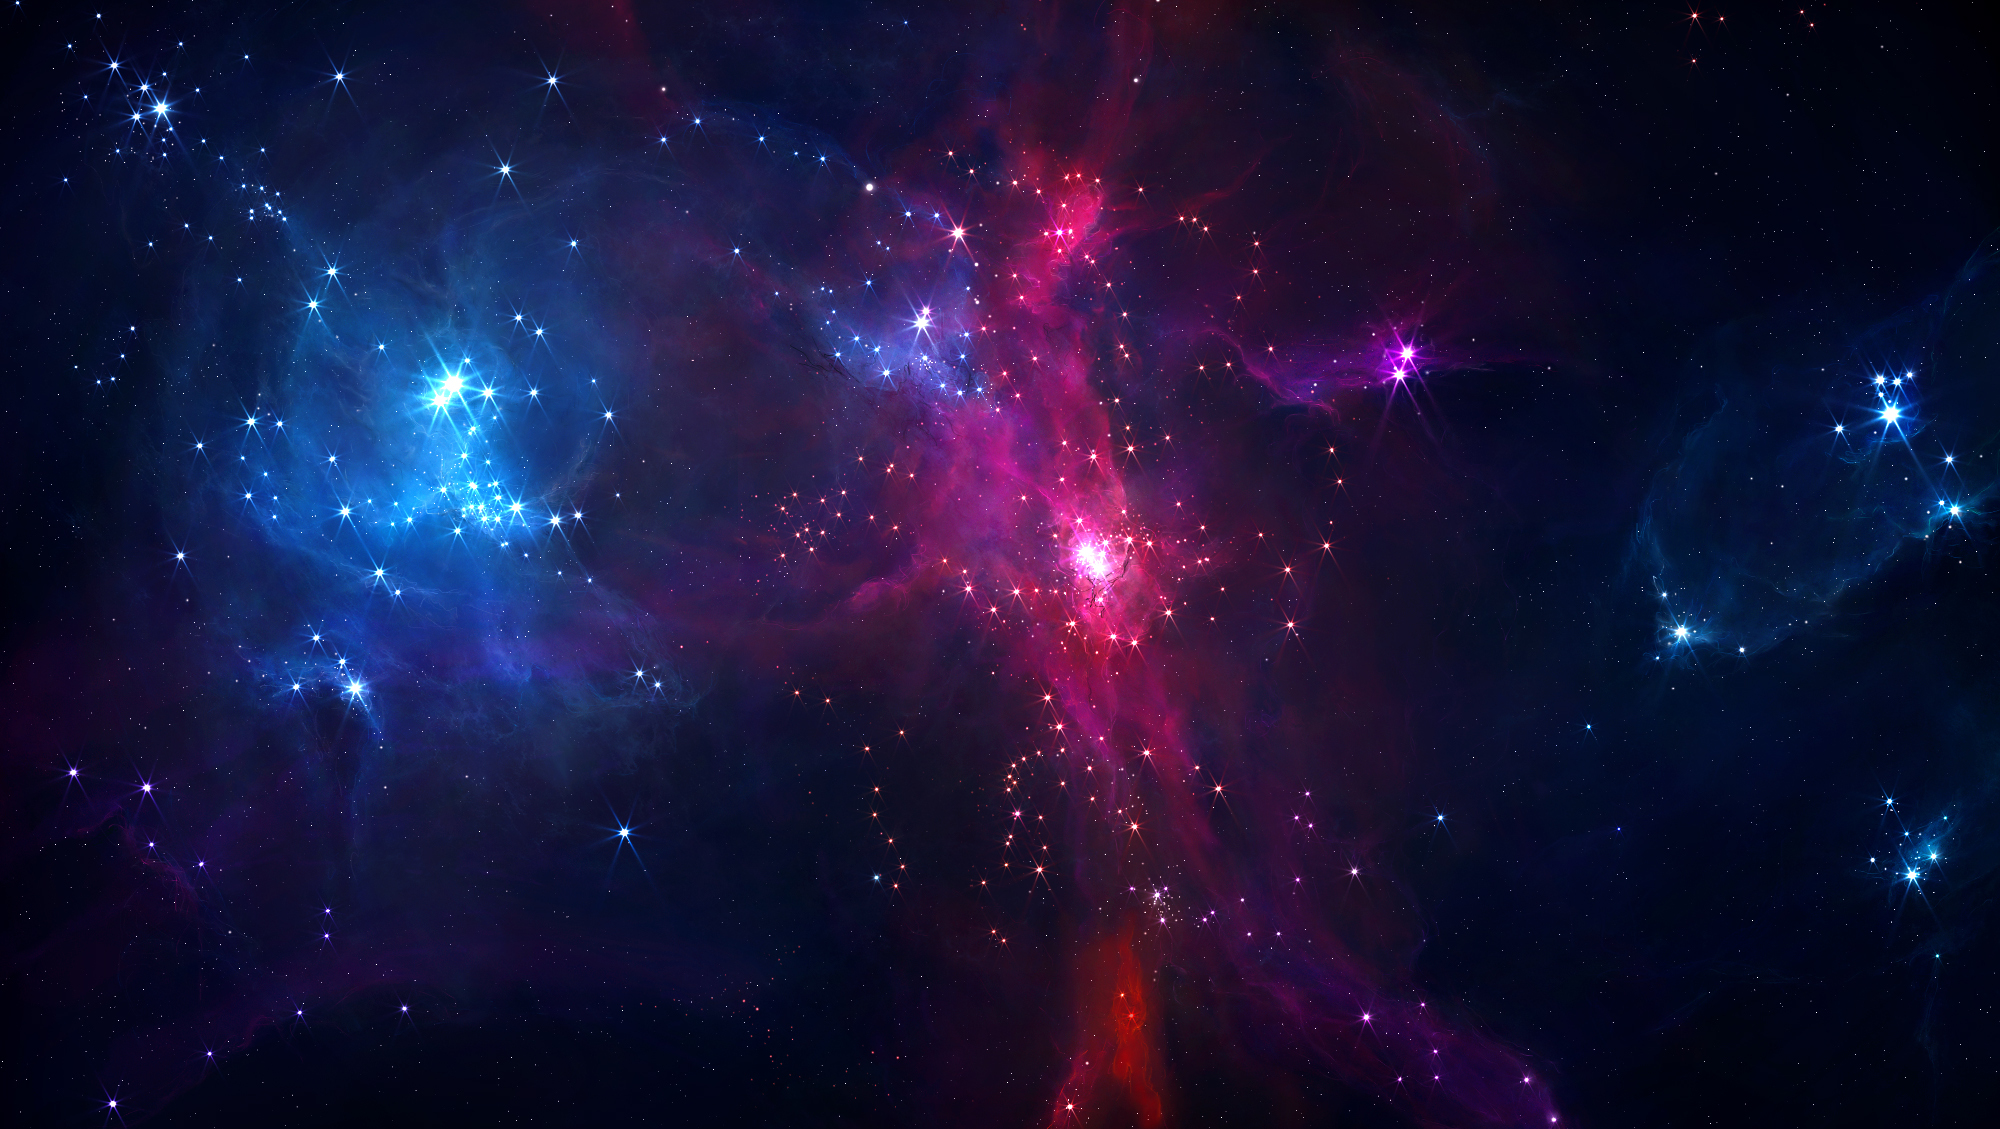 Обои космос туманность space nebula картинки на рабочий стол на тему Космос - скачать скачать